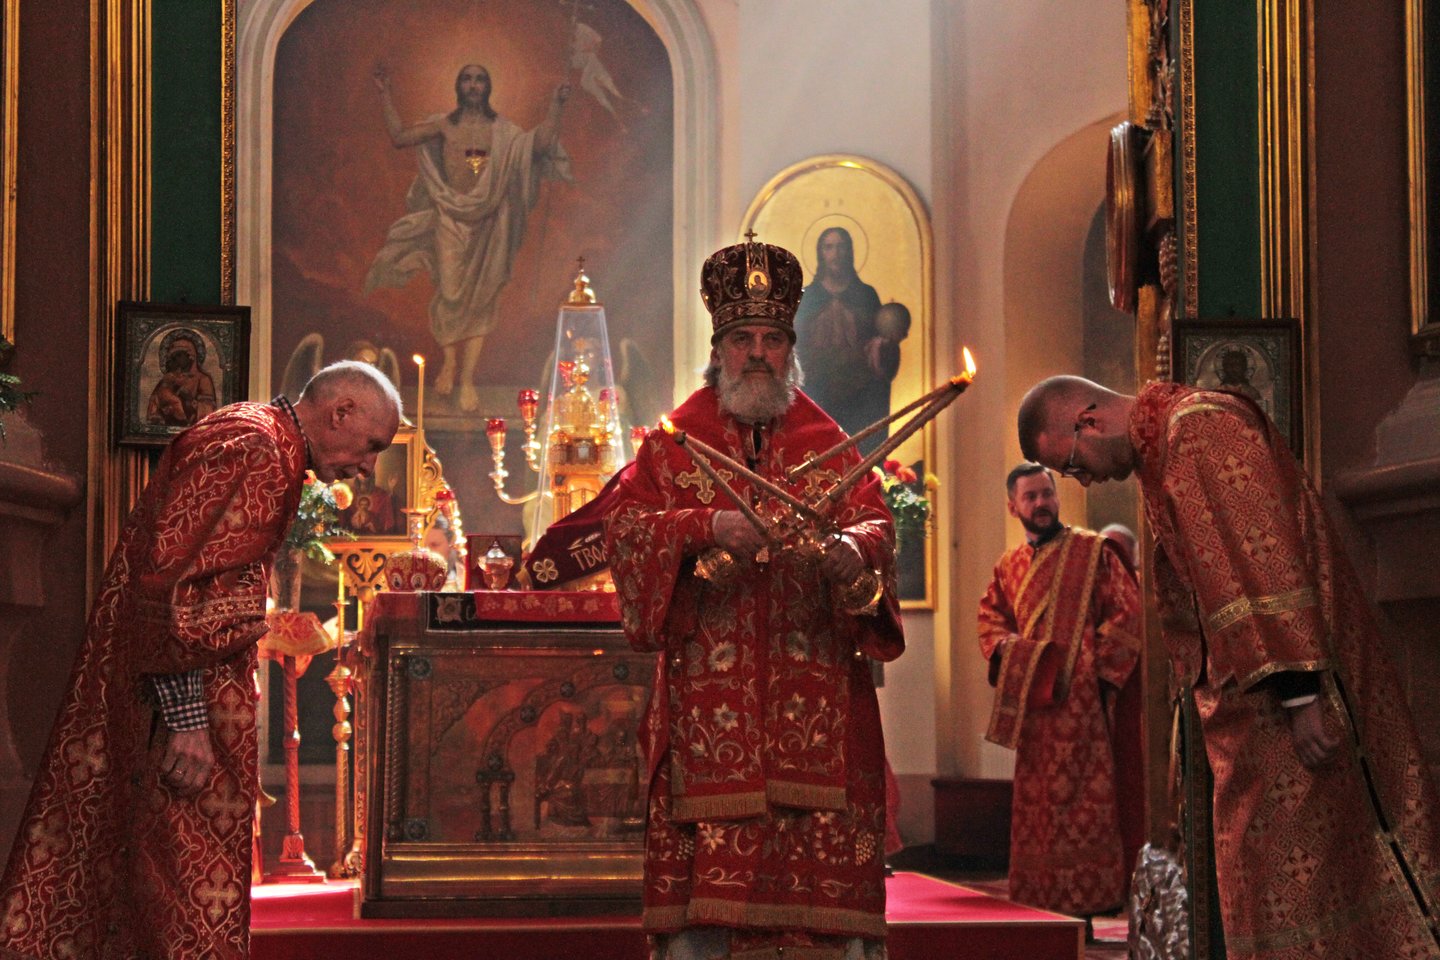  Ortodoksų metropolitas už priesaikos sulaužymą suspendavo penkis atskilusius kunigus.<br> Lietuvos ortodoksų bažnyčios nuotr.